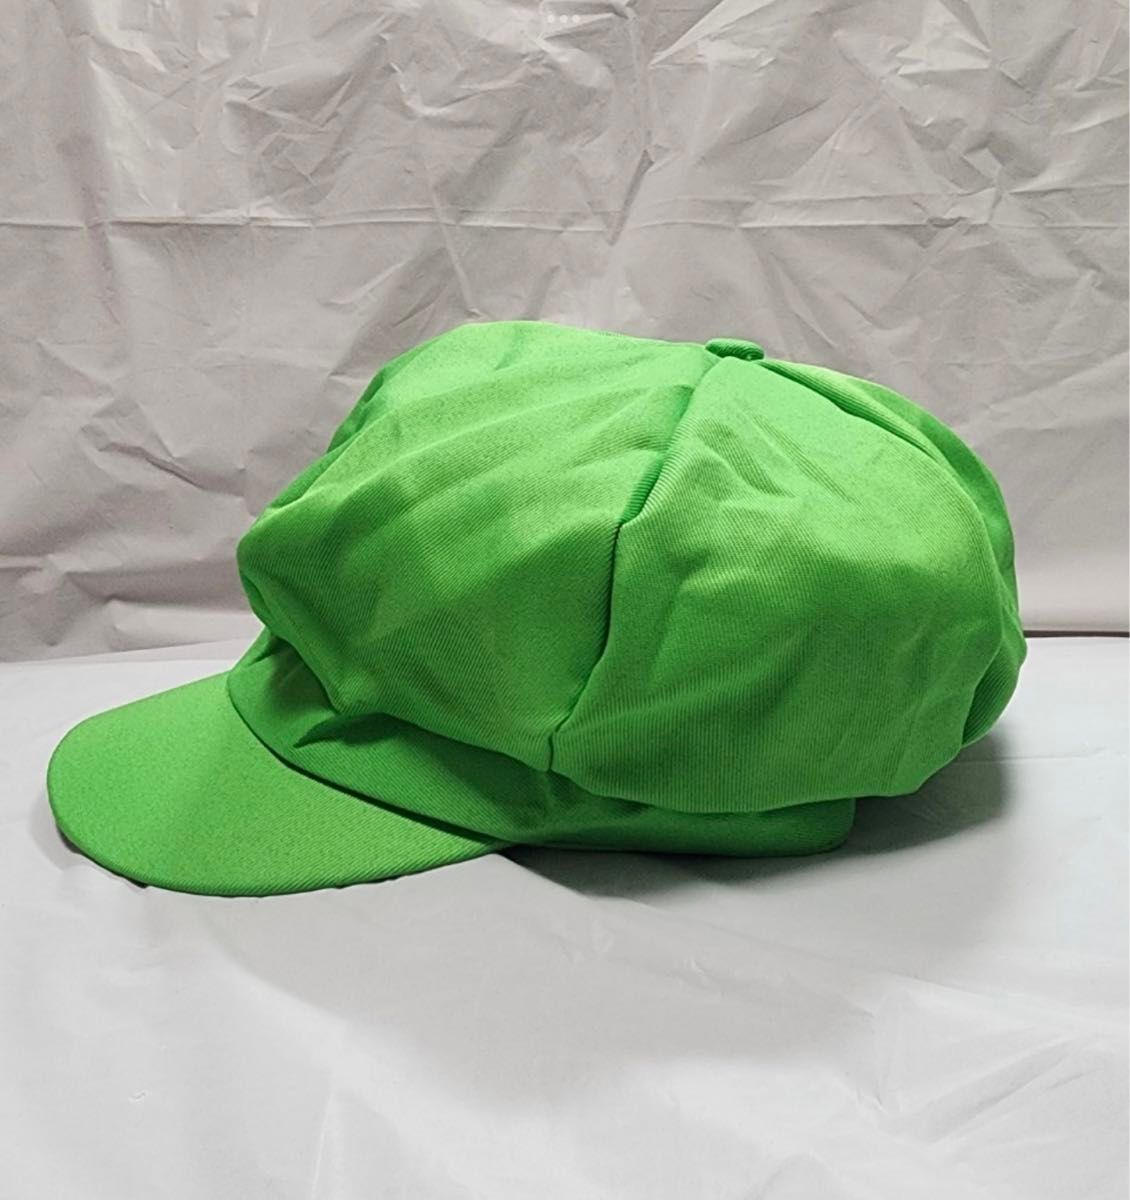 マリオ ルイージ 帽子 子供 大人 フリーサイズ  赤 緑  USJ 映画